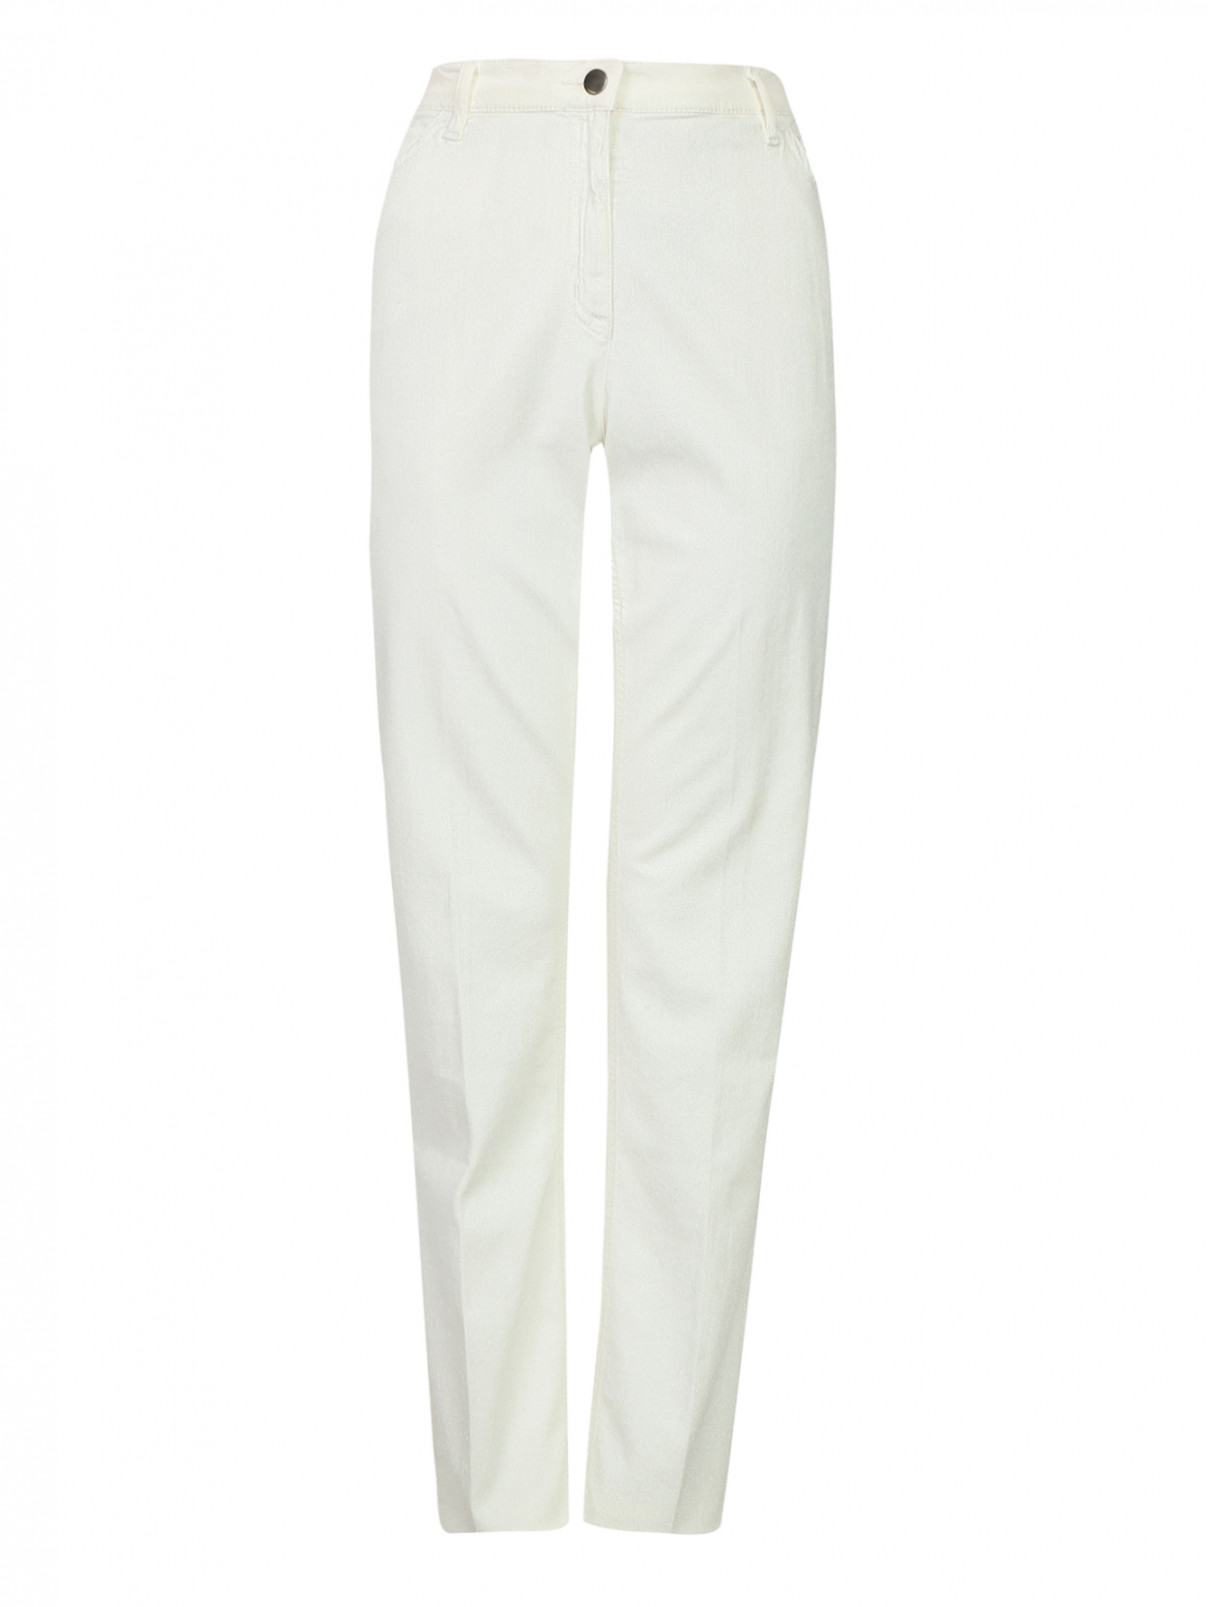 Зауженные джинсы из светлого денима Marina Rinaldi  –  Общий вид  – Цвет:  Белый